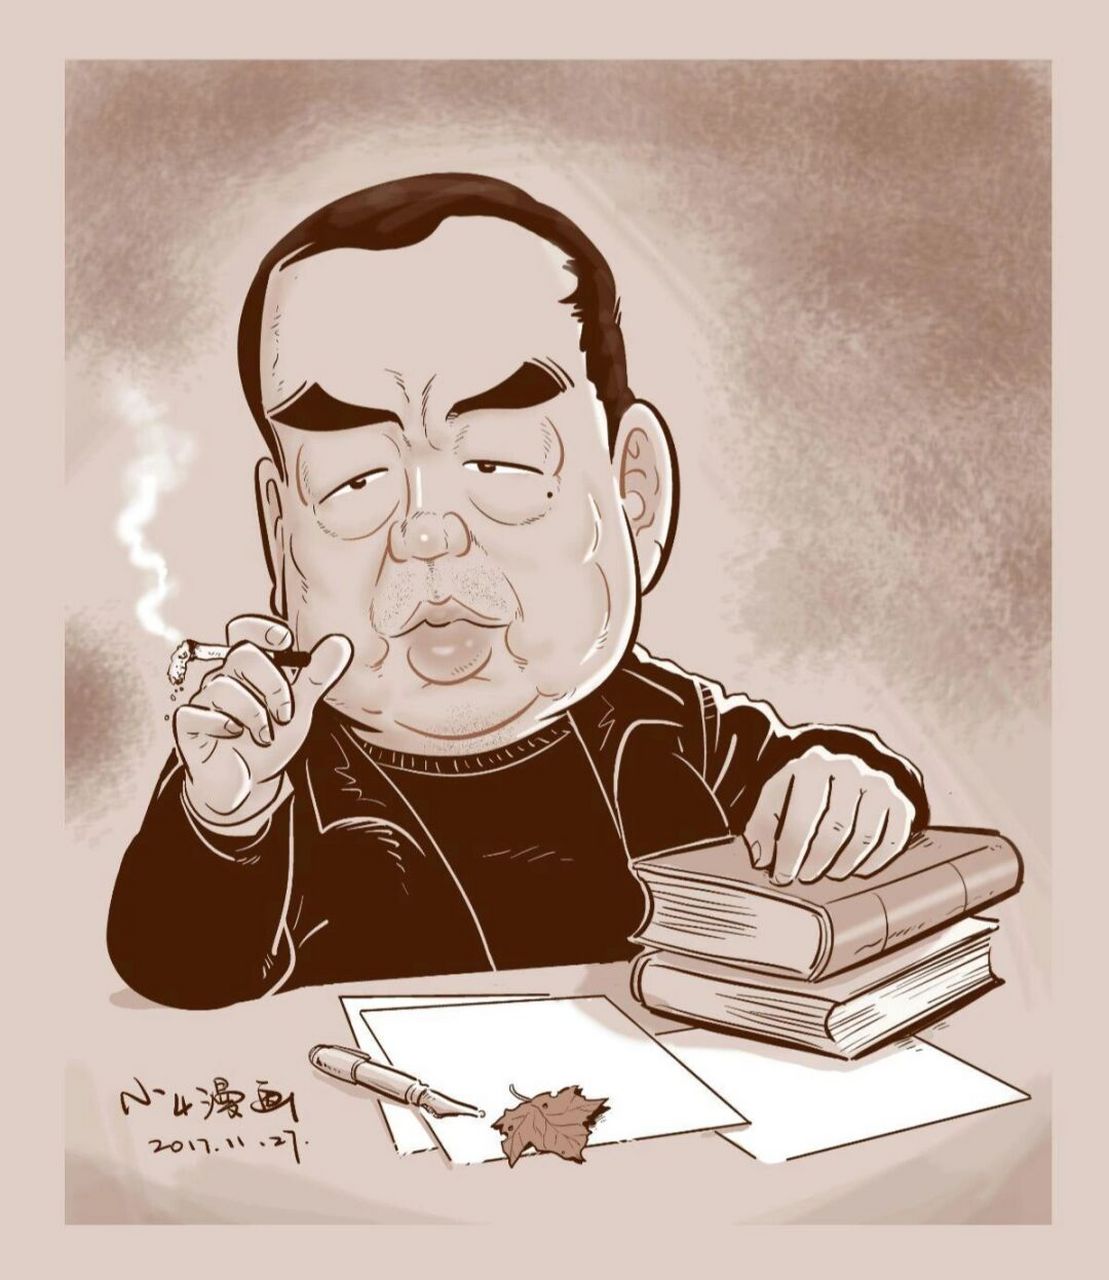 漫画一下作家贾平凹～ 贾平凹,本名贾平娃,1952年2月21日出生于陕西省